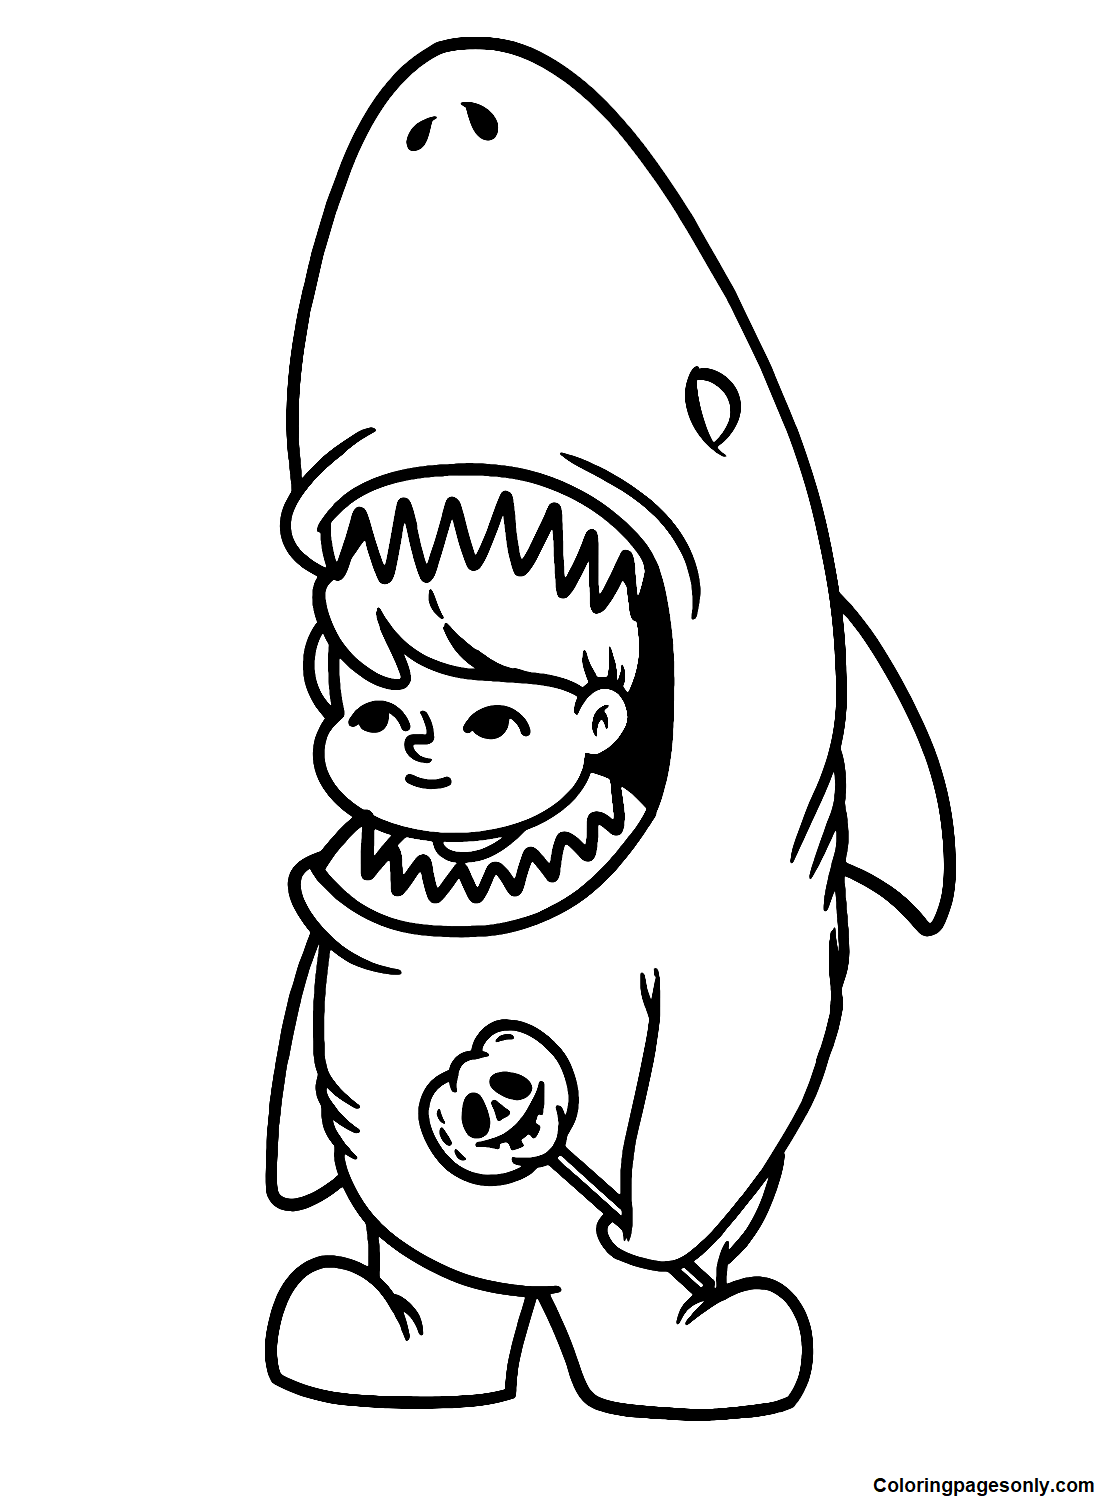 Süßer Junge im Hai-Kostüm von Boyish